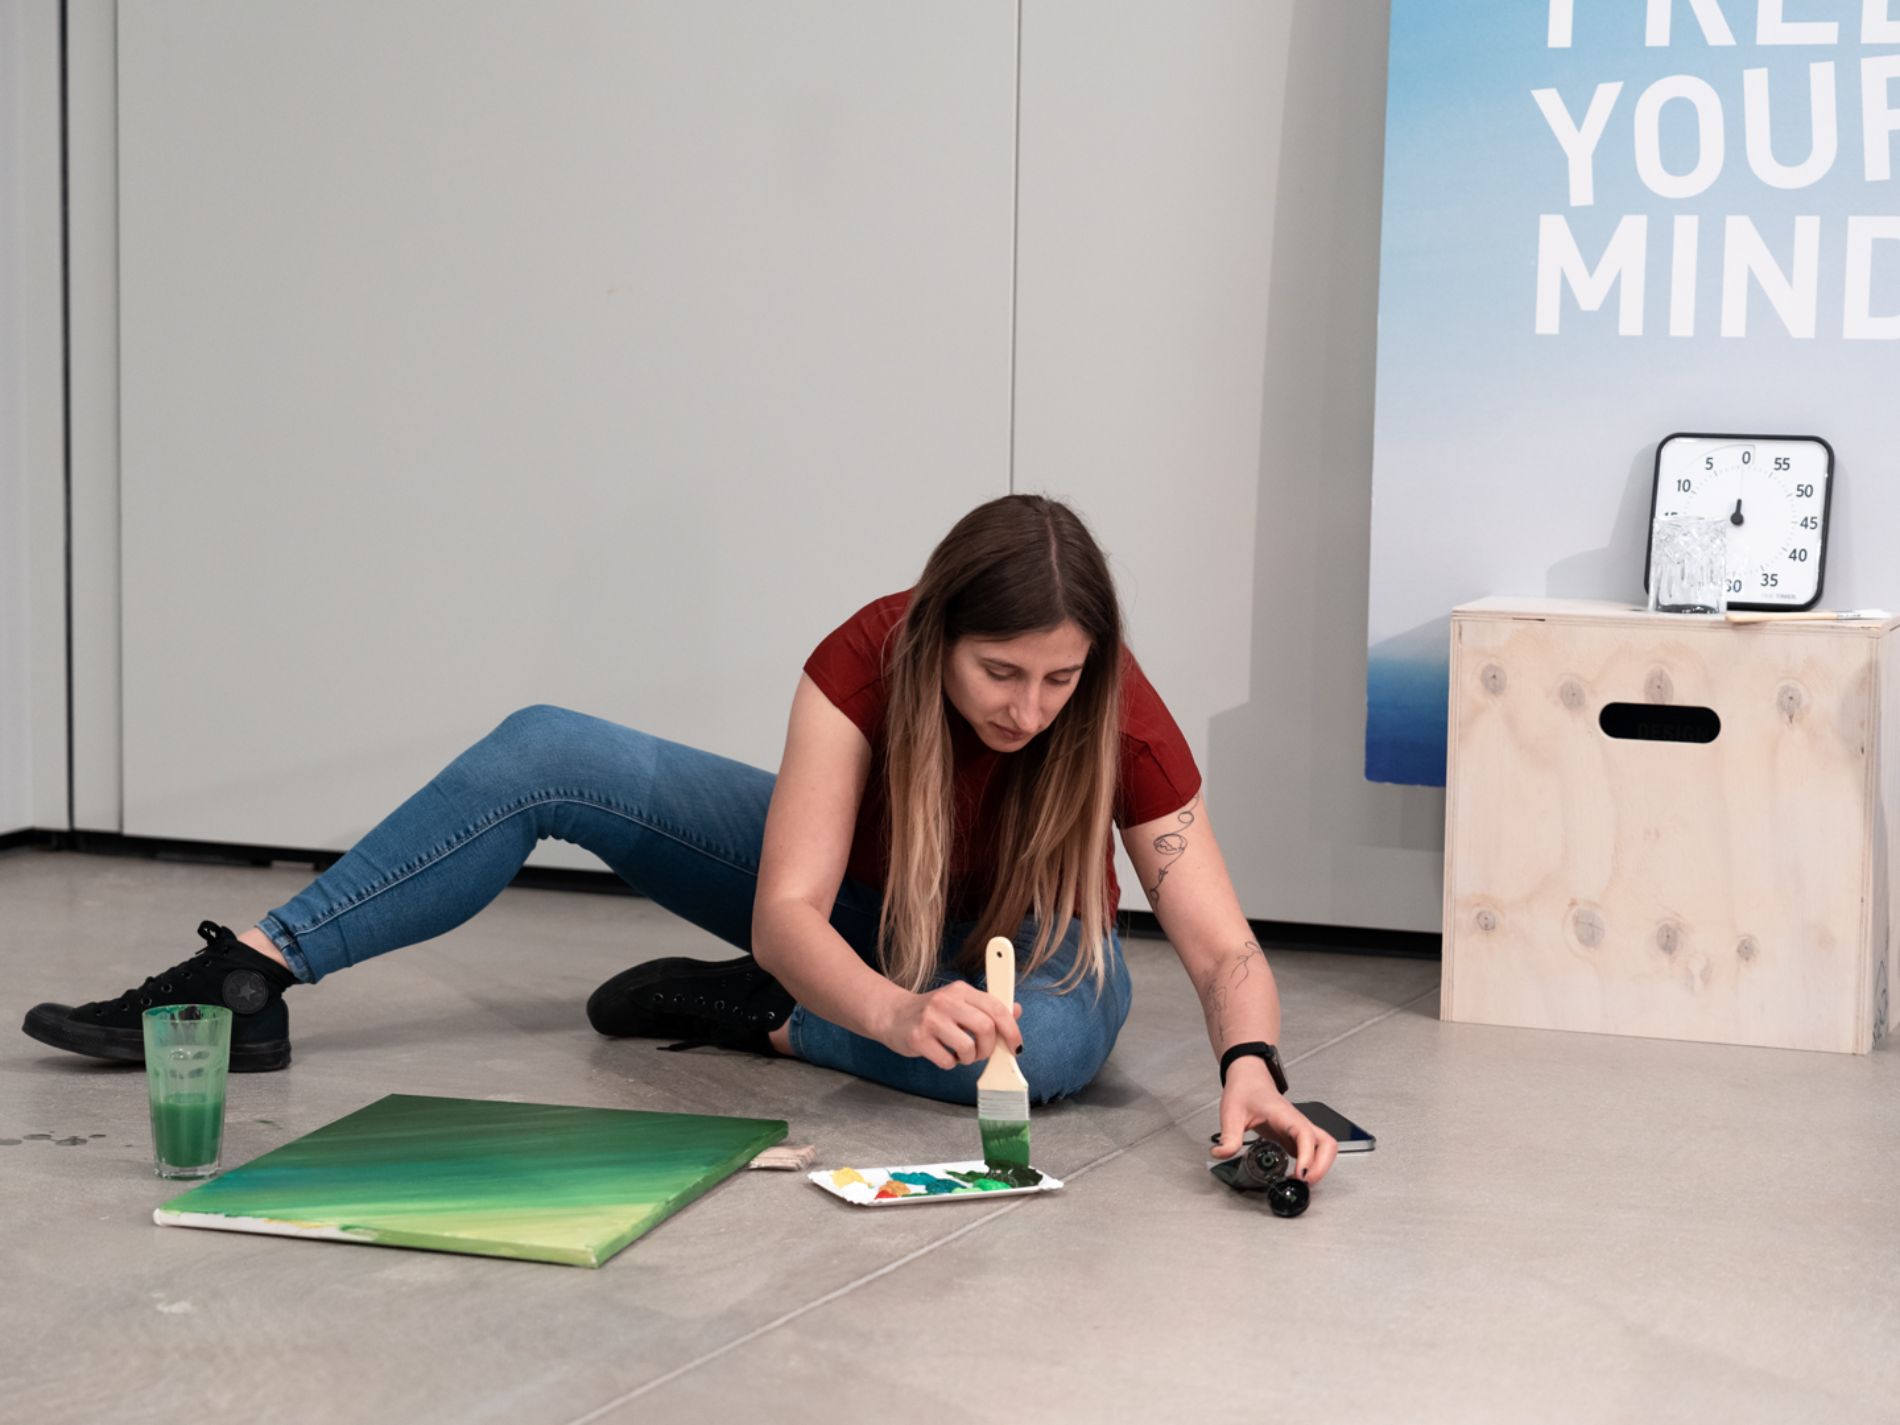 Teilnehmerin sitzt auf dem Boden und malt auf eine Leinwand